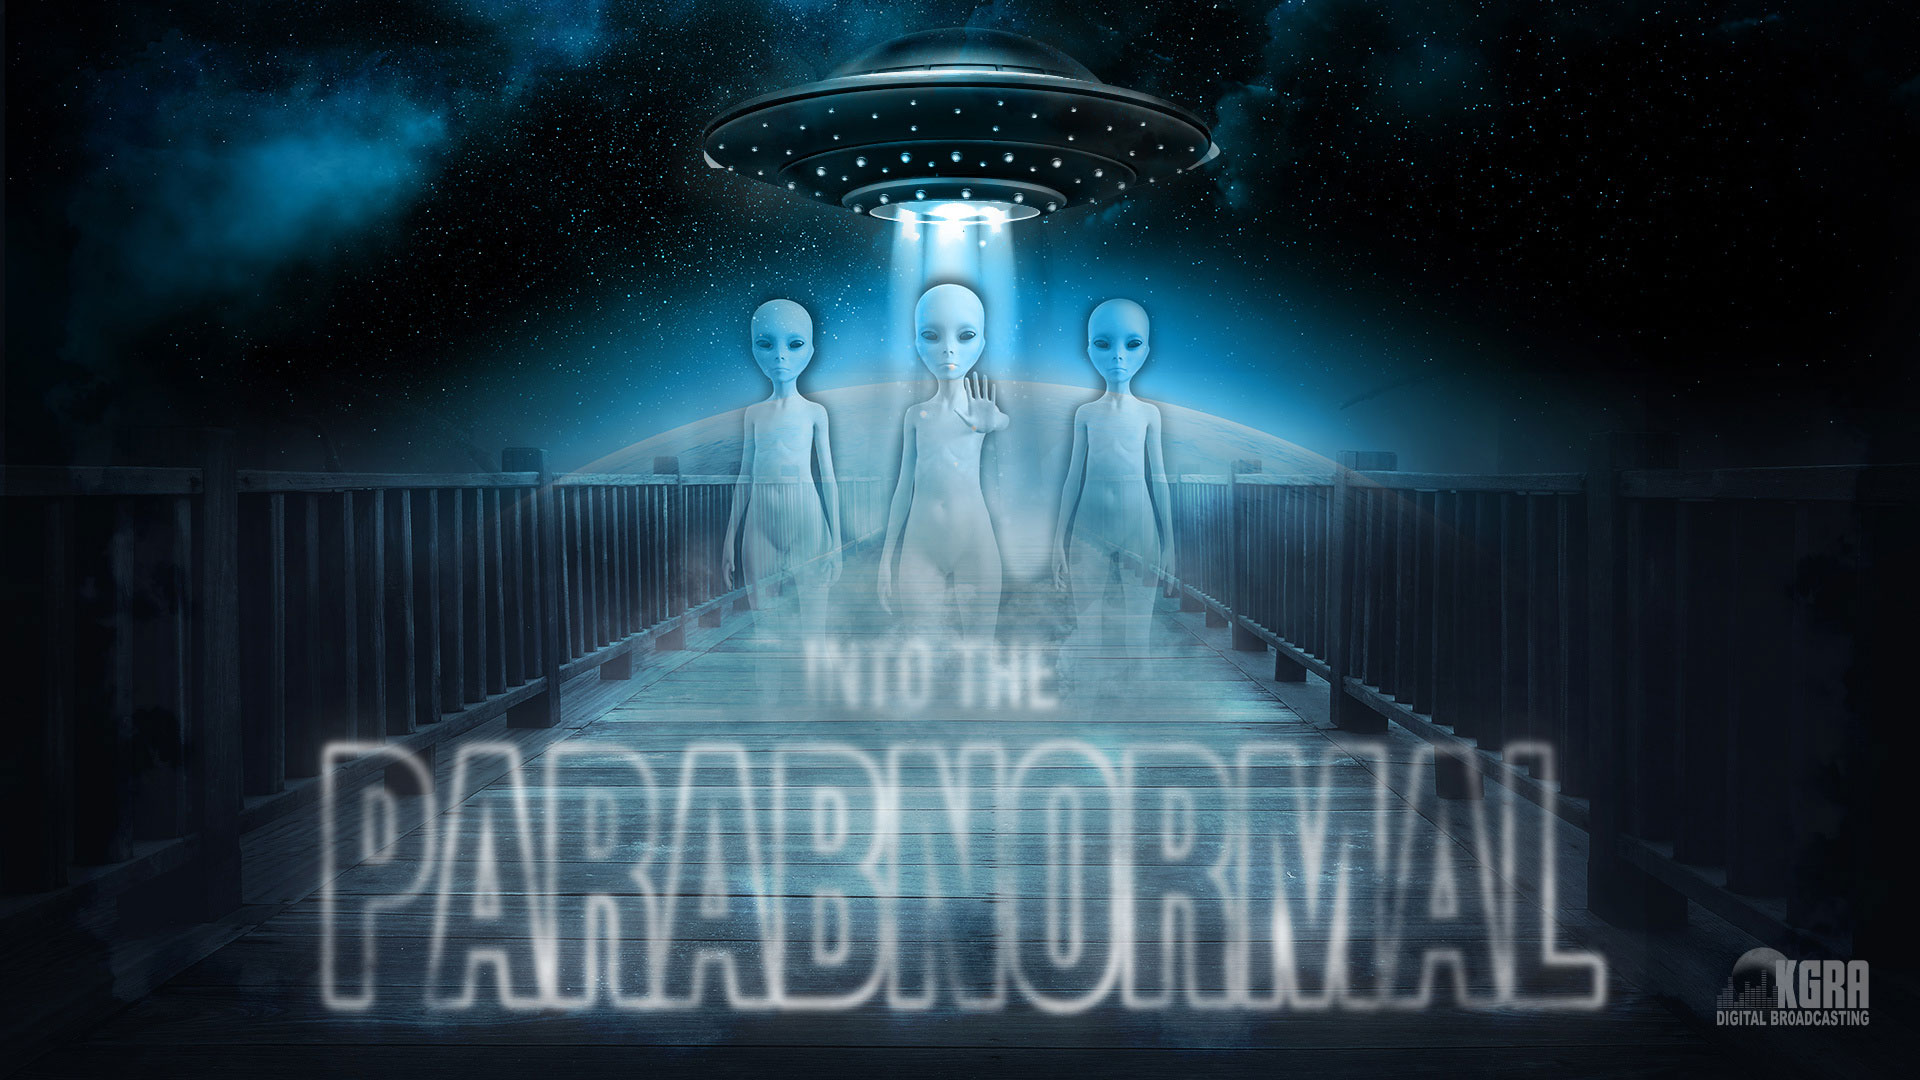 Into The Parabnormal - KGRA Digital Broadcasting